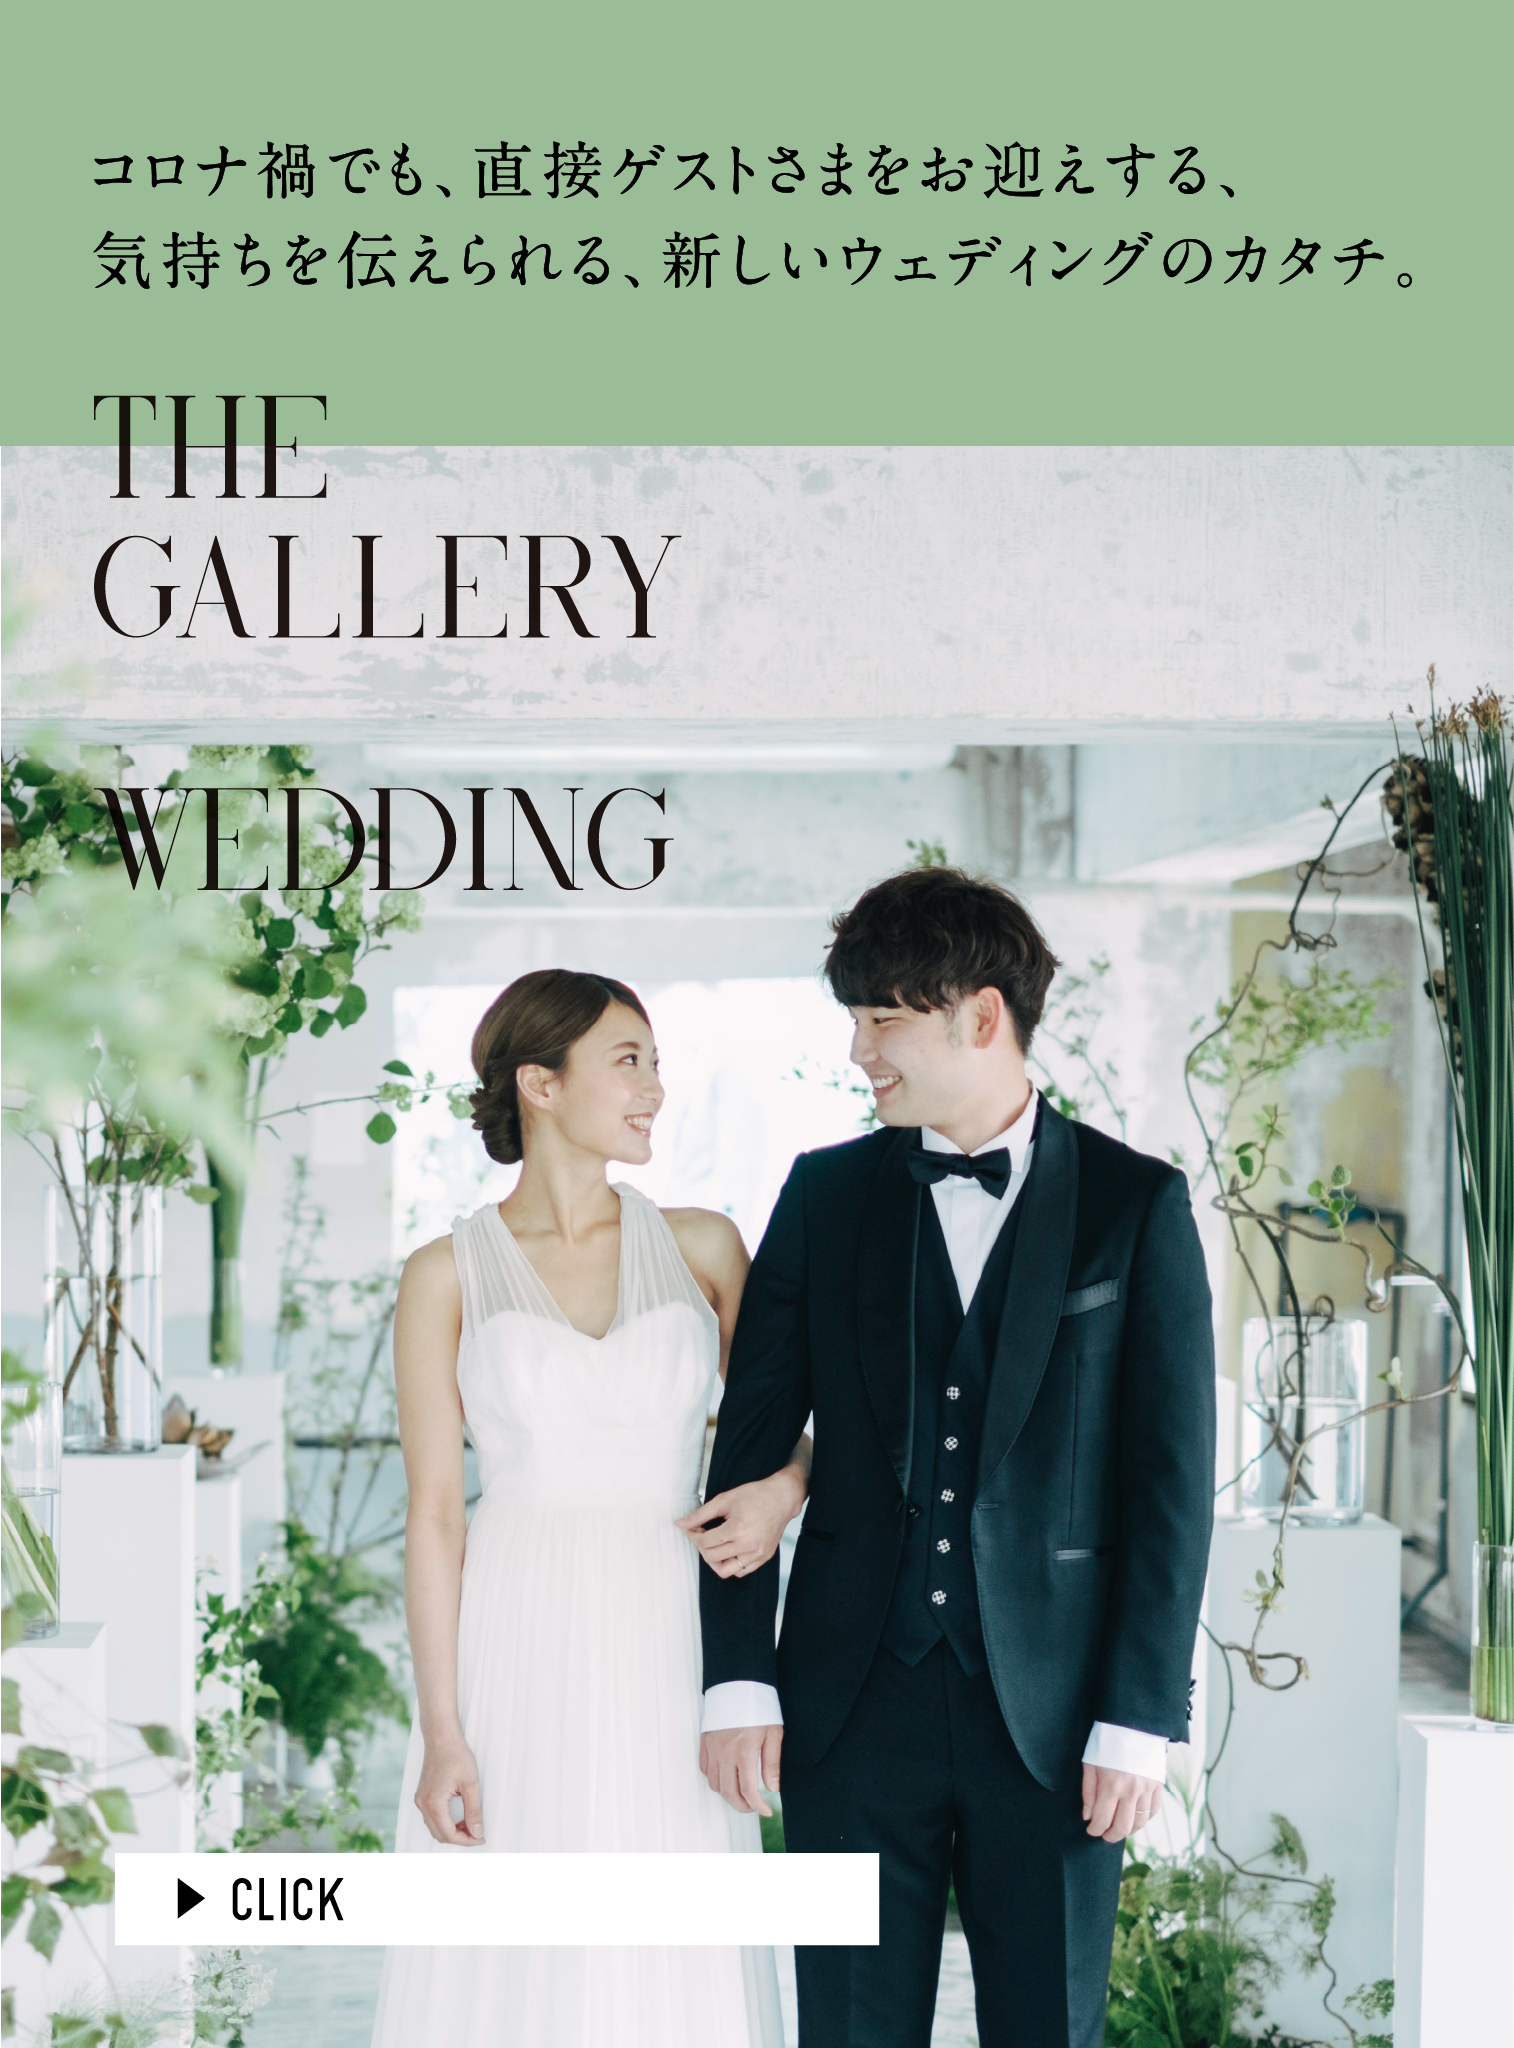 The Gallery Wedding コロナ禍でも、直接ゲストさまをお迎えする、気持ちを伝えられる、新しいウェディングのカタチ。 CLICK